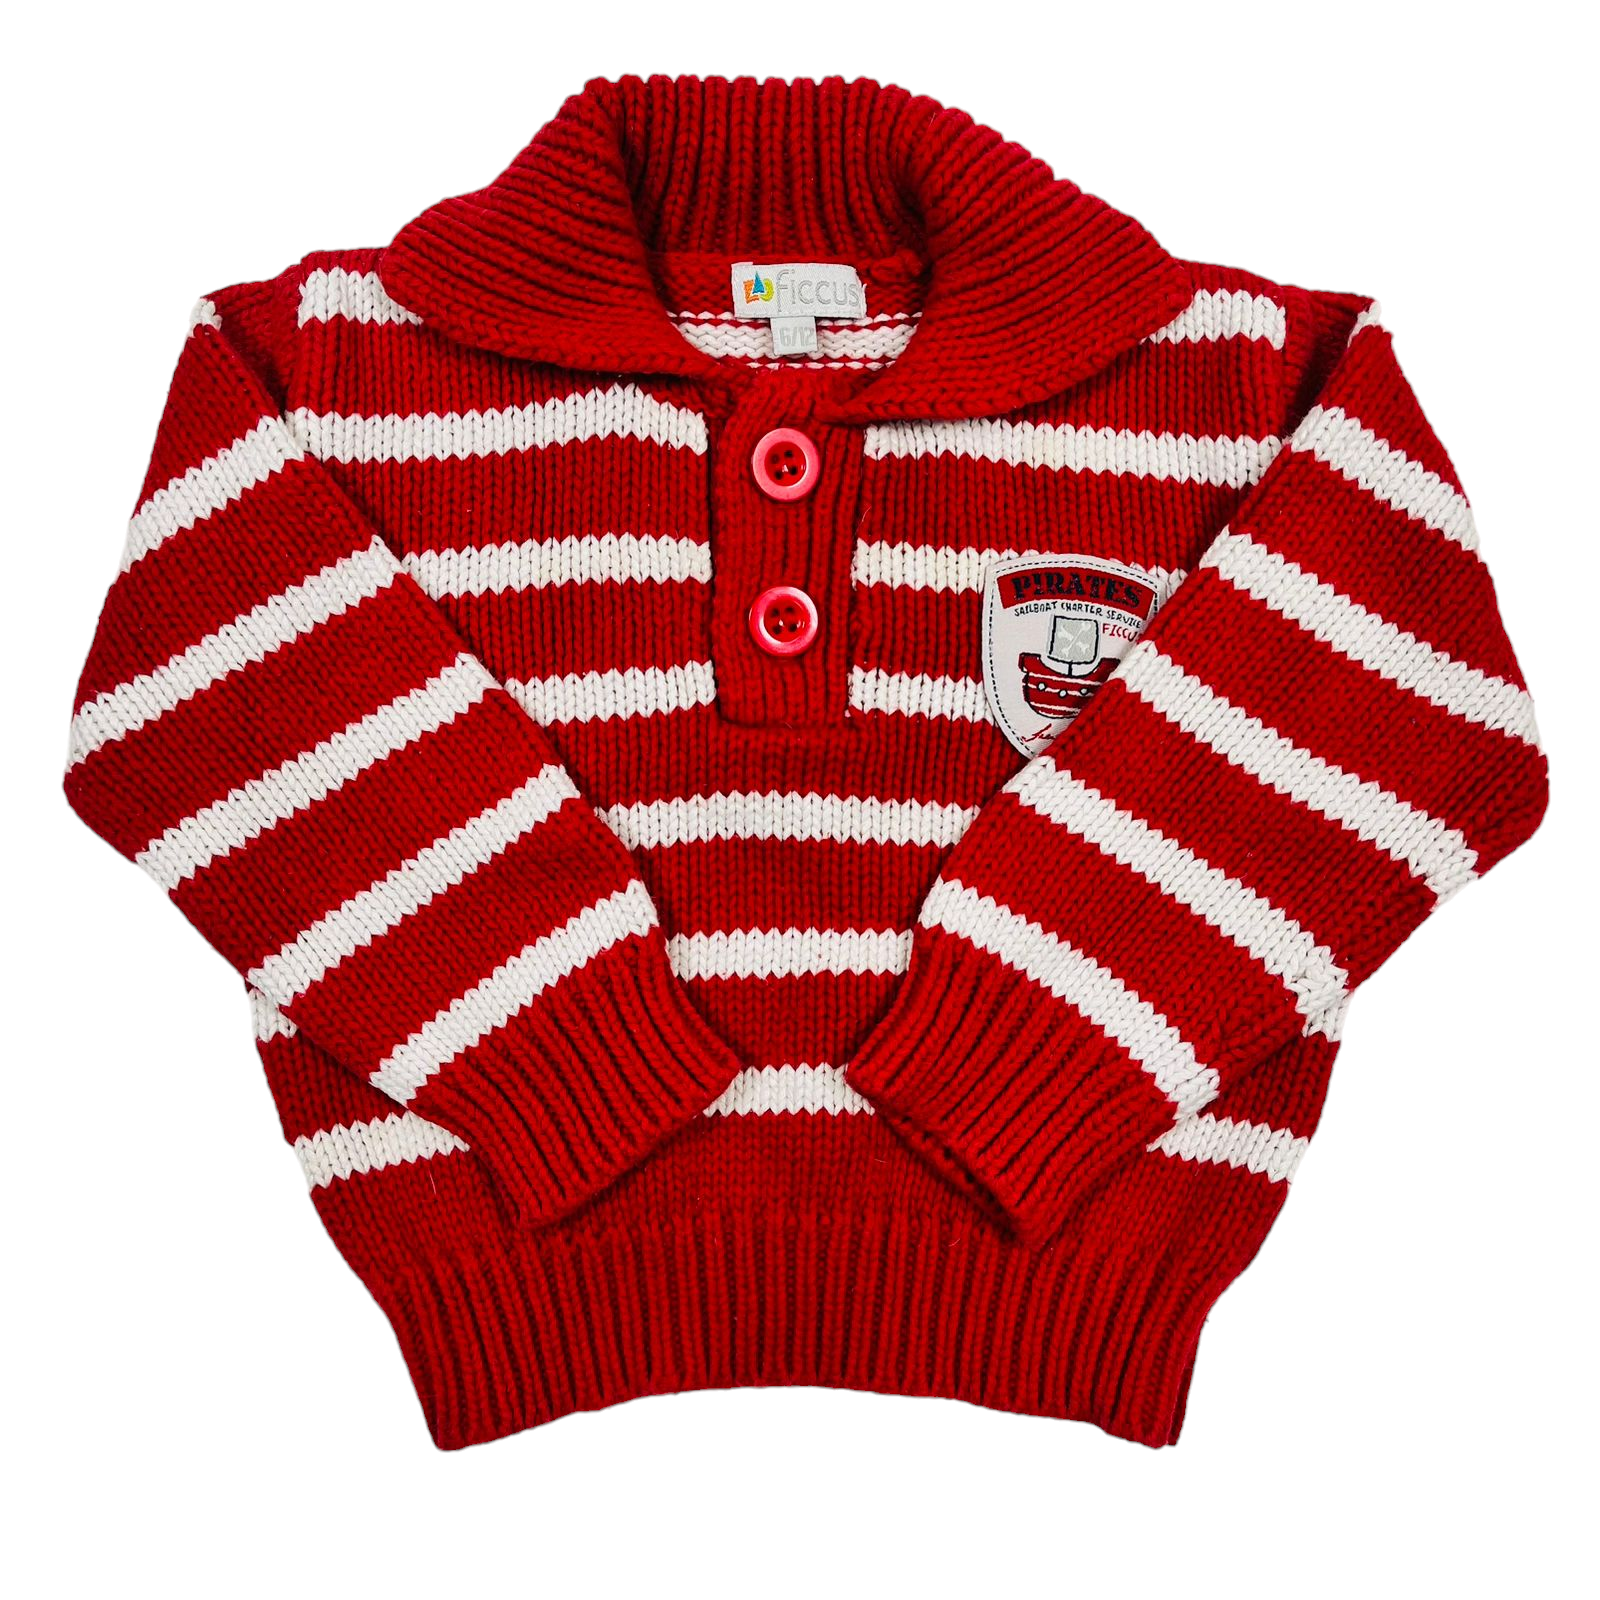 Chaleco de lana rojo con lineas blancas y botones diseño de barco con ancla pirates